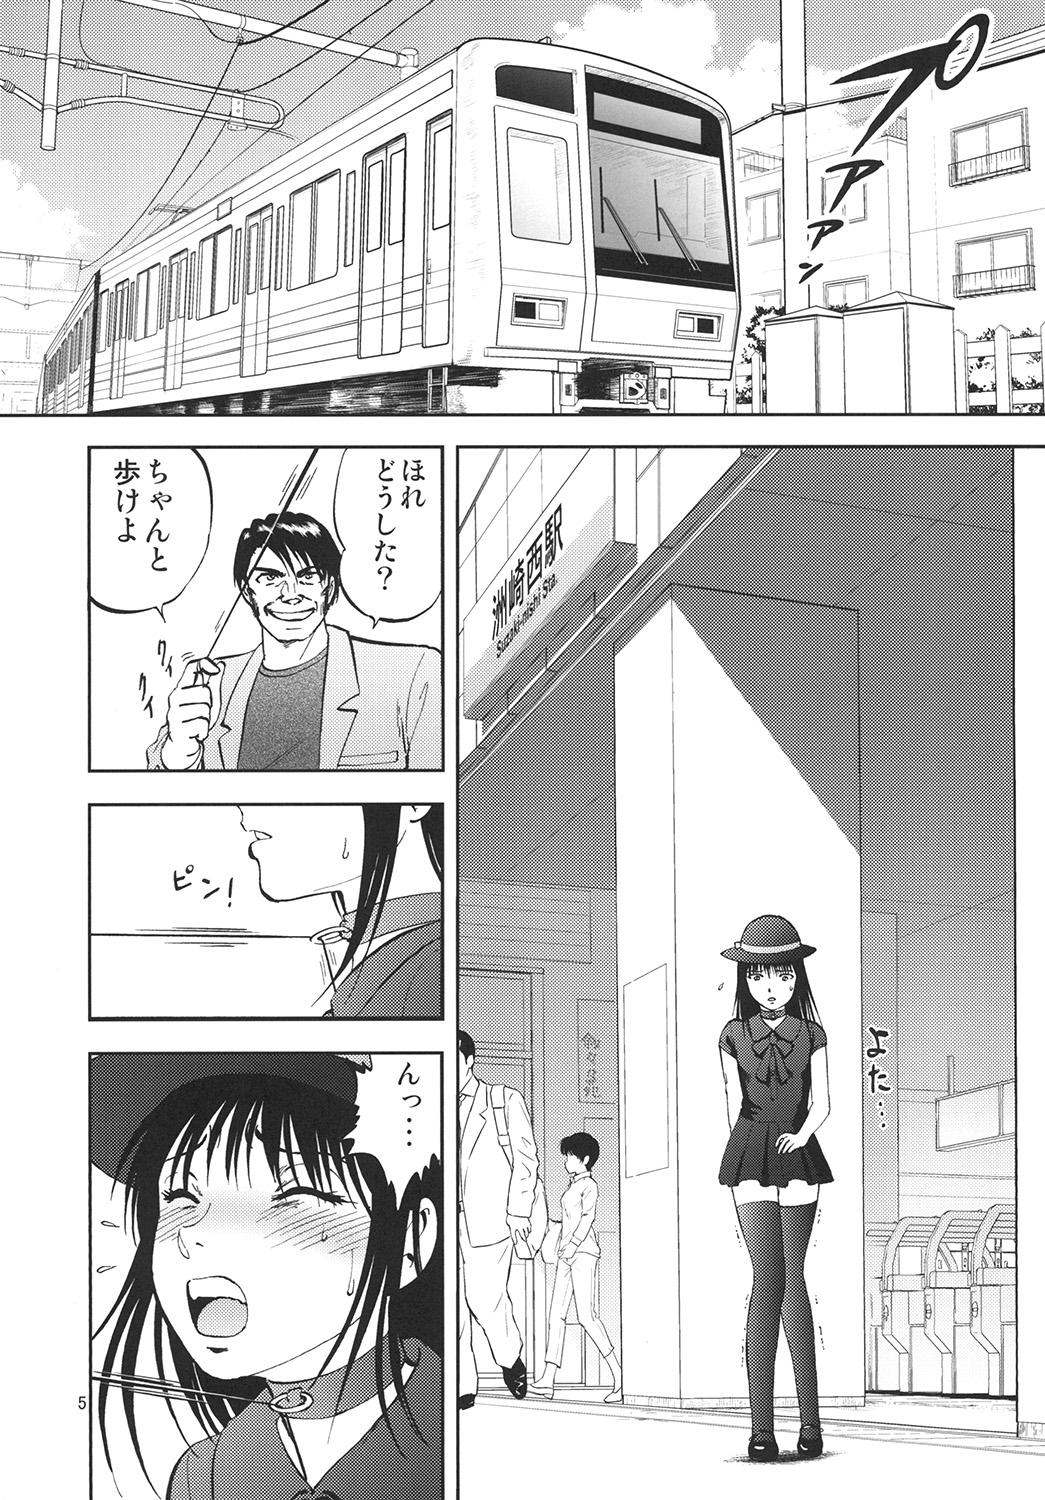 First Ura Kuri Hiroi 6 Teen - Page 5